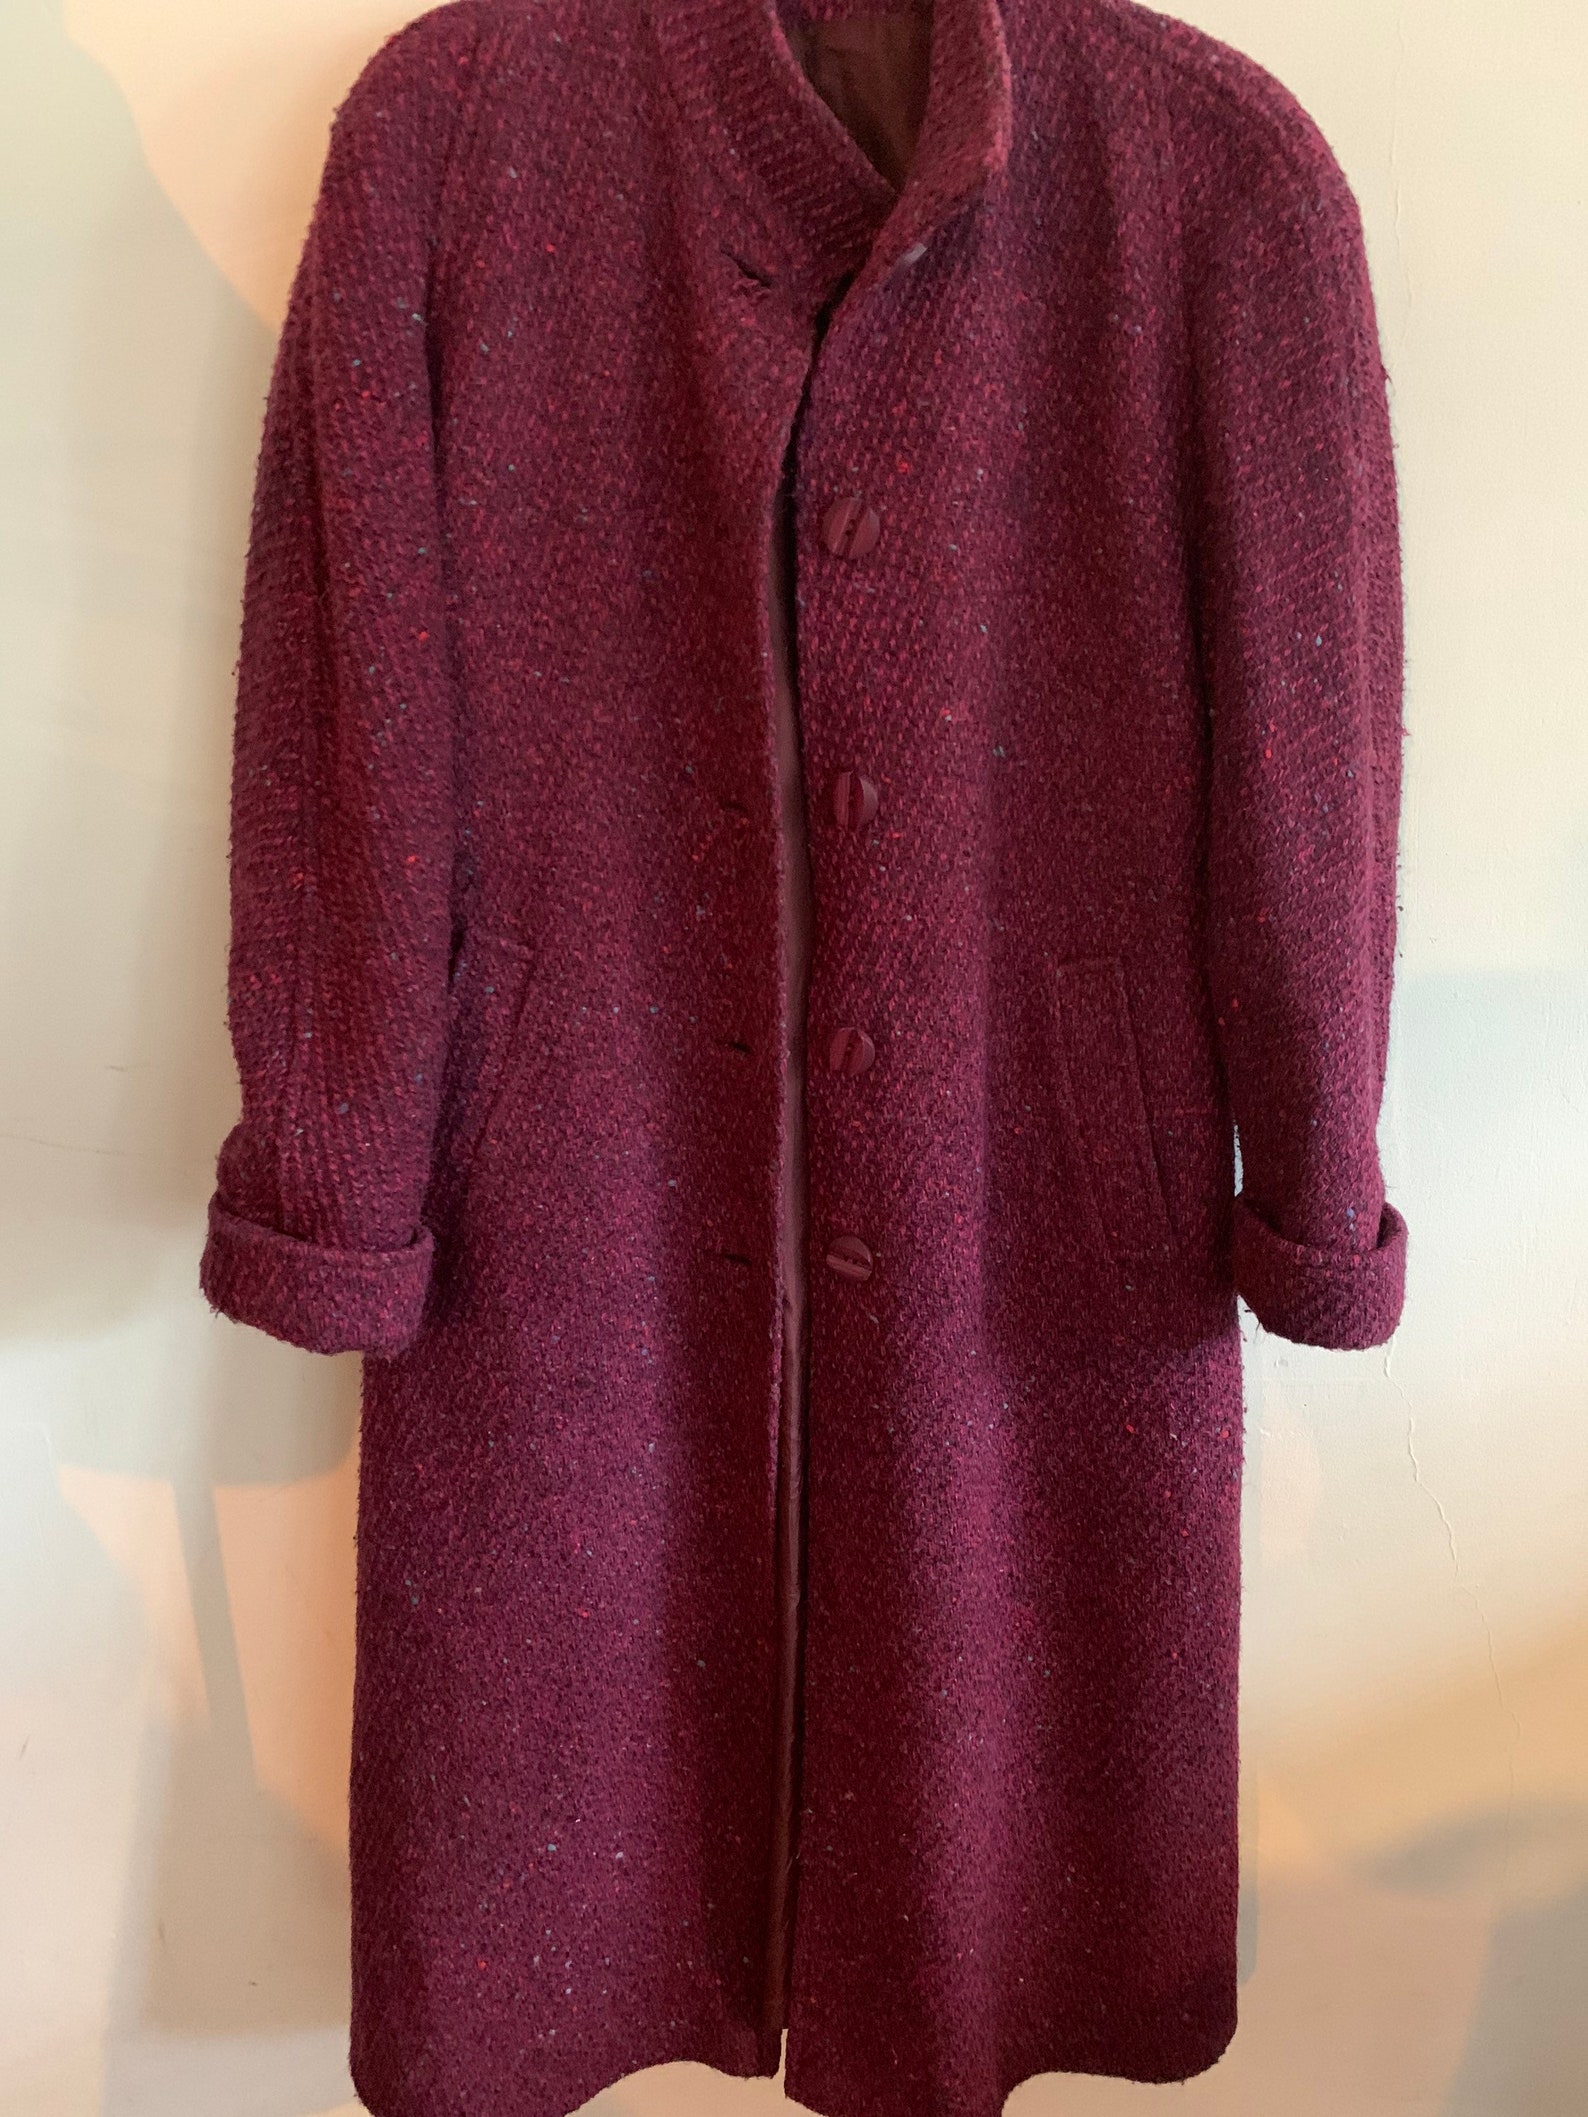 Vintage wool tweed pink coat | Etsy